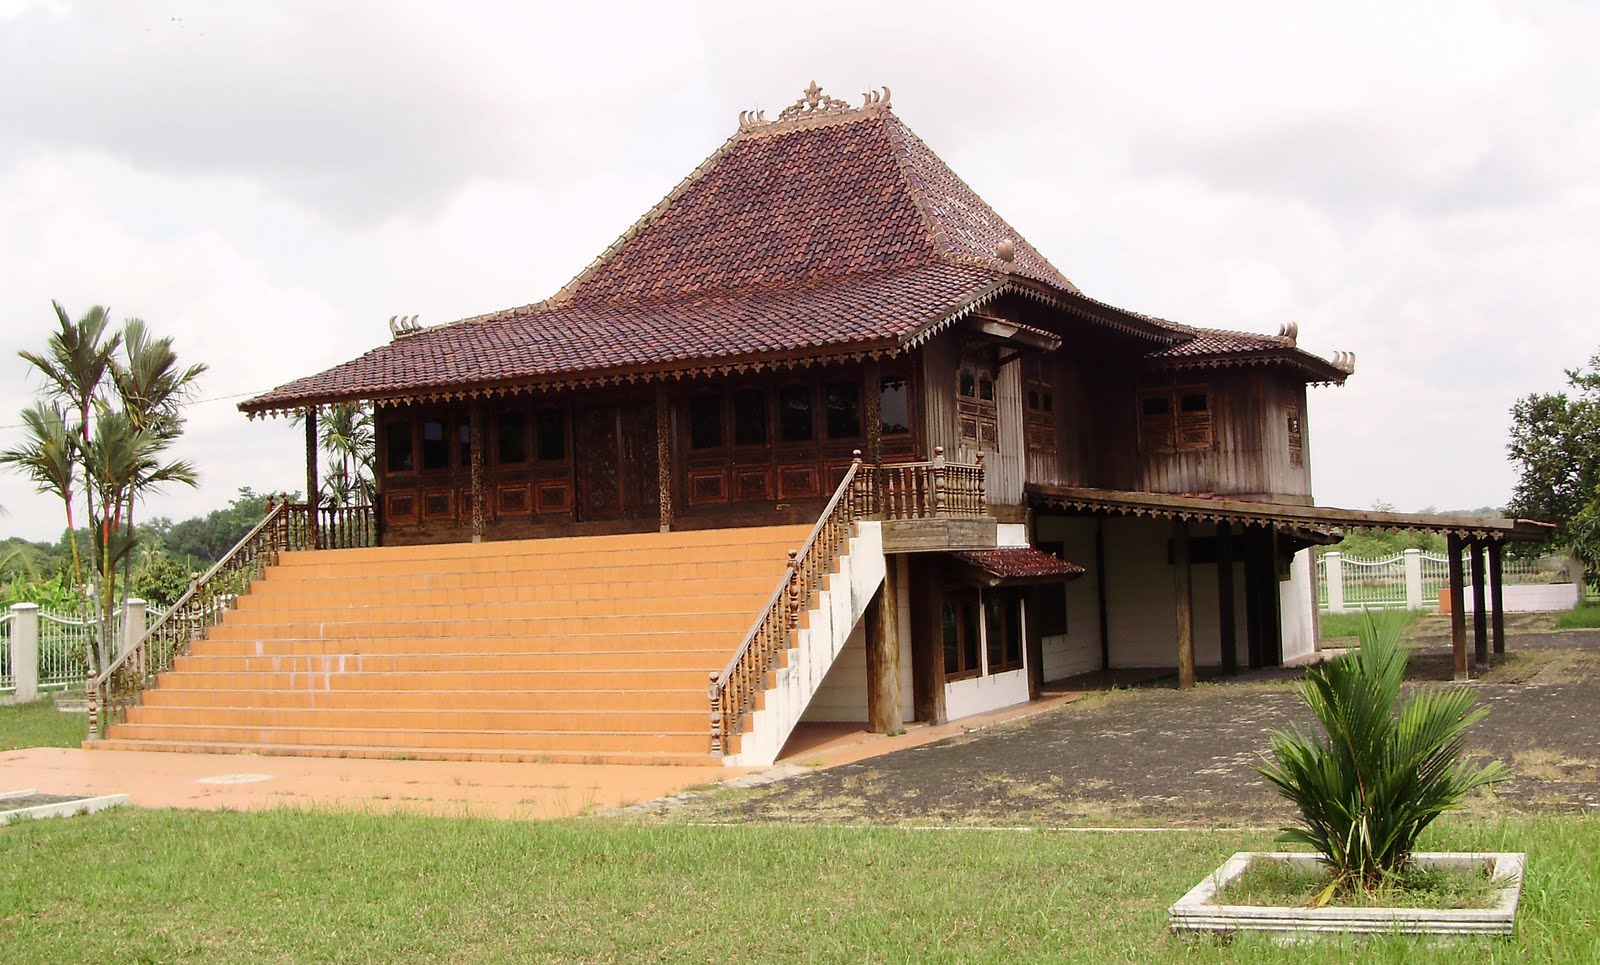 Rumah Adat Tradisional Indonesia  Jember Tourism